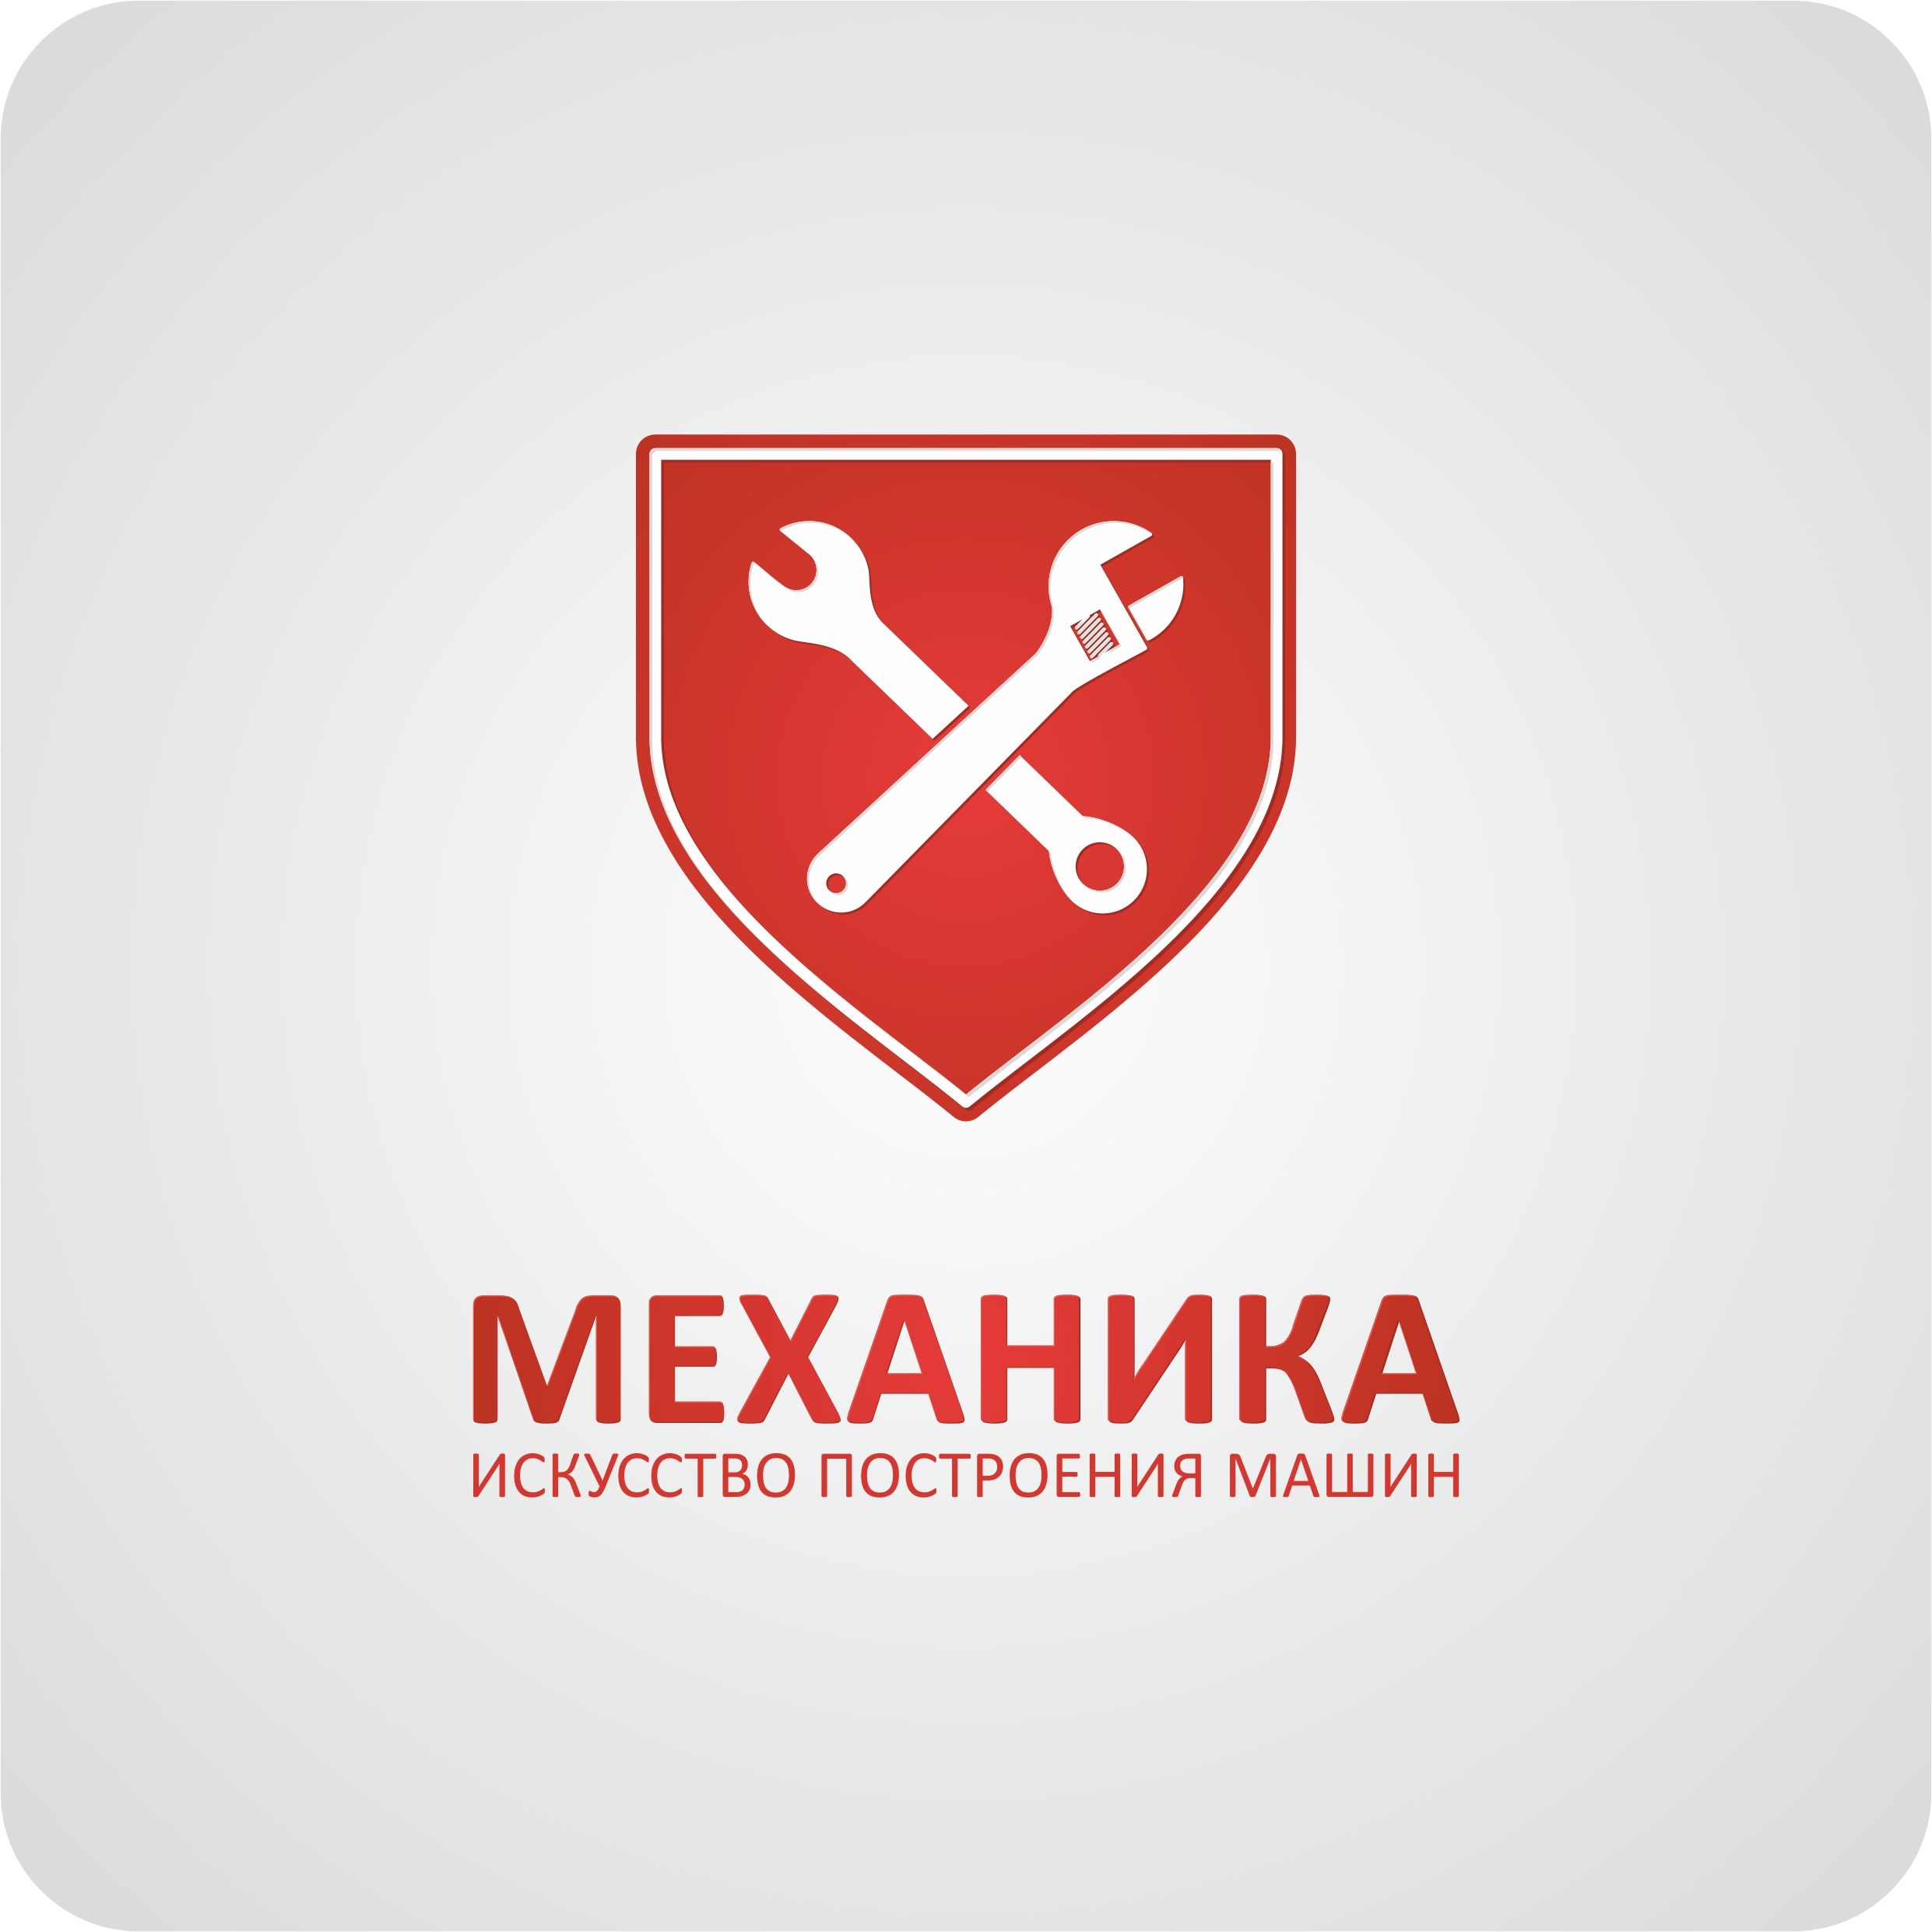 Логотип для магазина автозапчасти 'Механика' - дизайнер o-Soubi-st